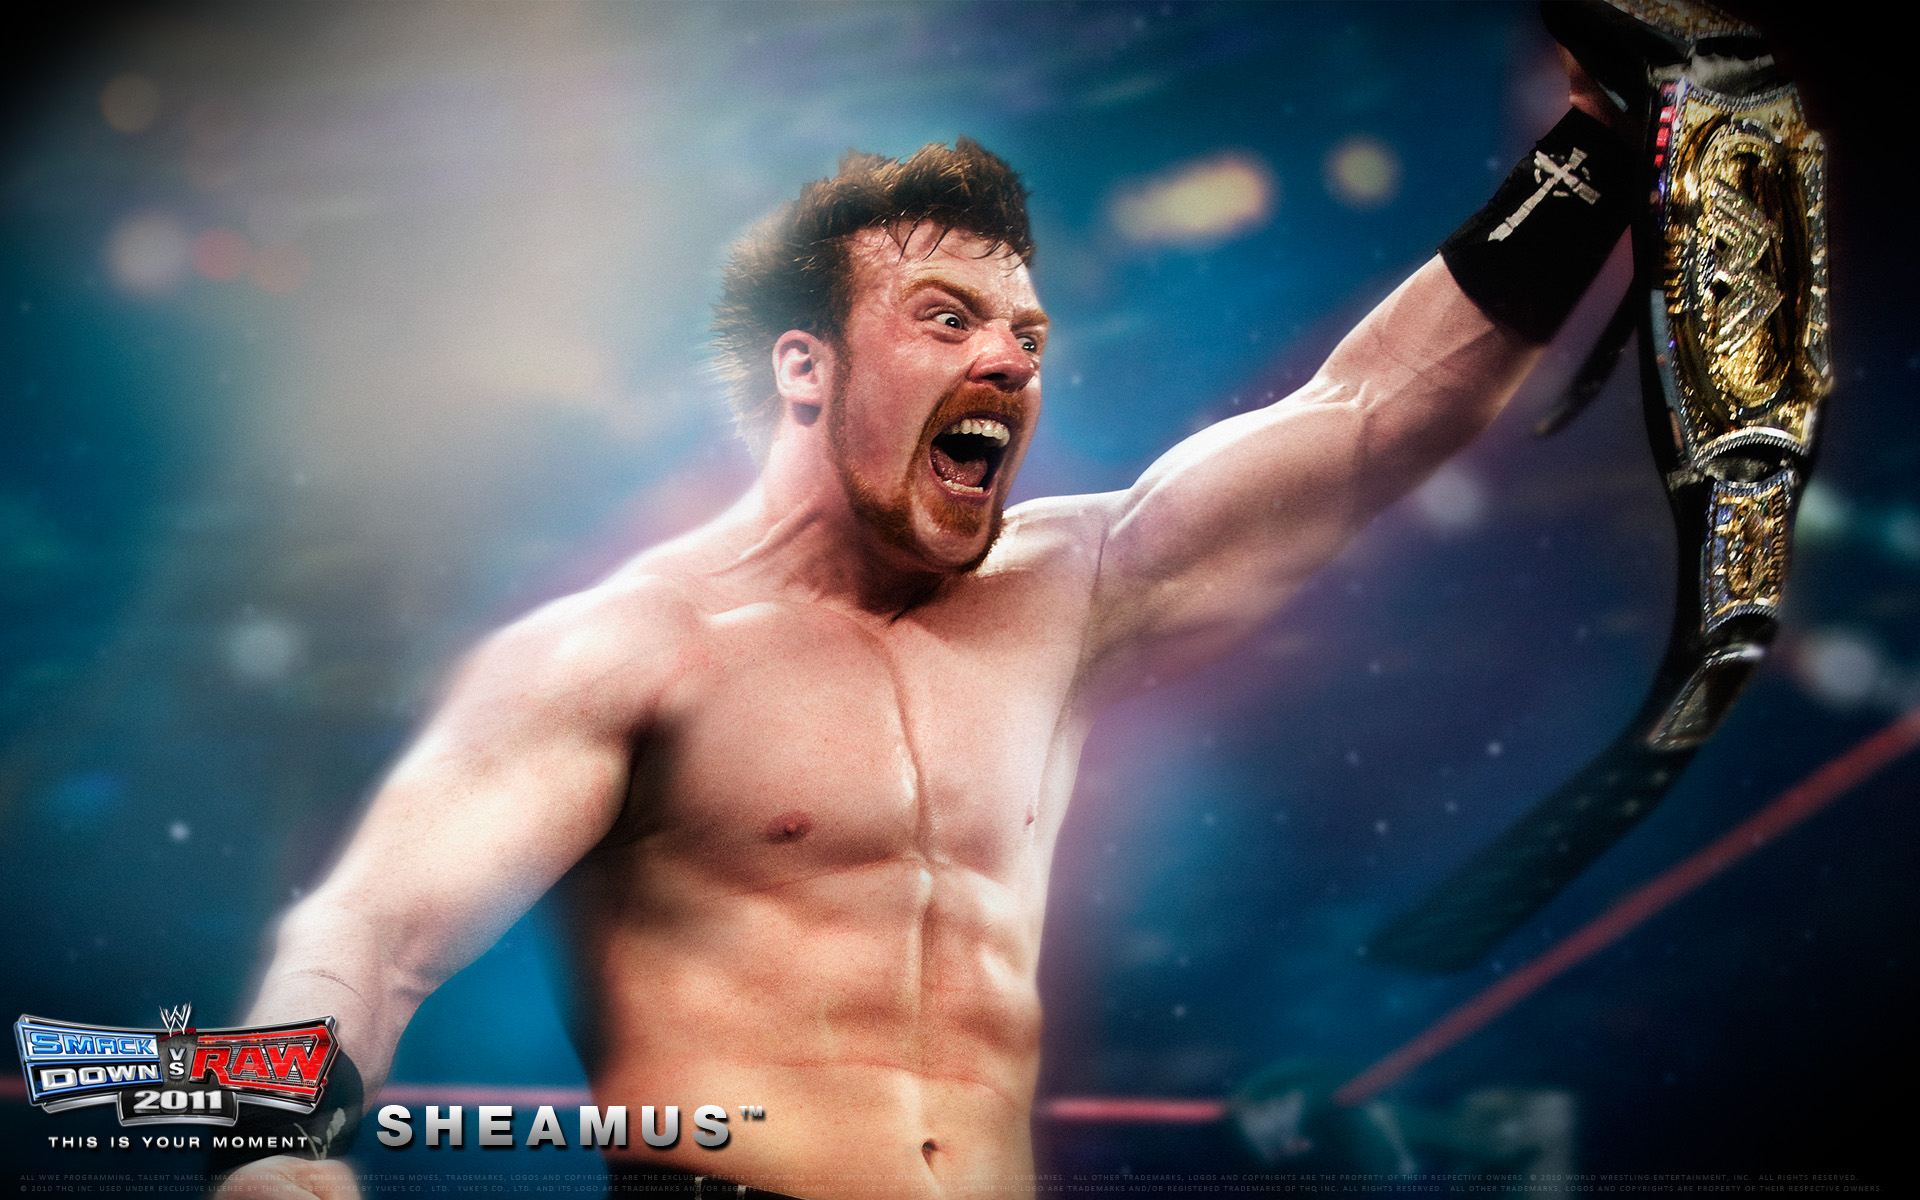 Wwe Smackdown Vs Raw 2011 Sheamus Wallpaper